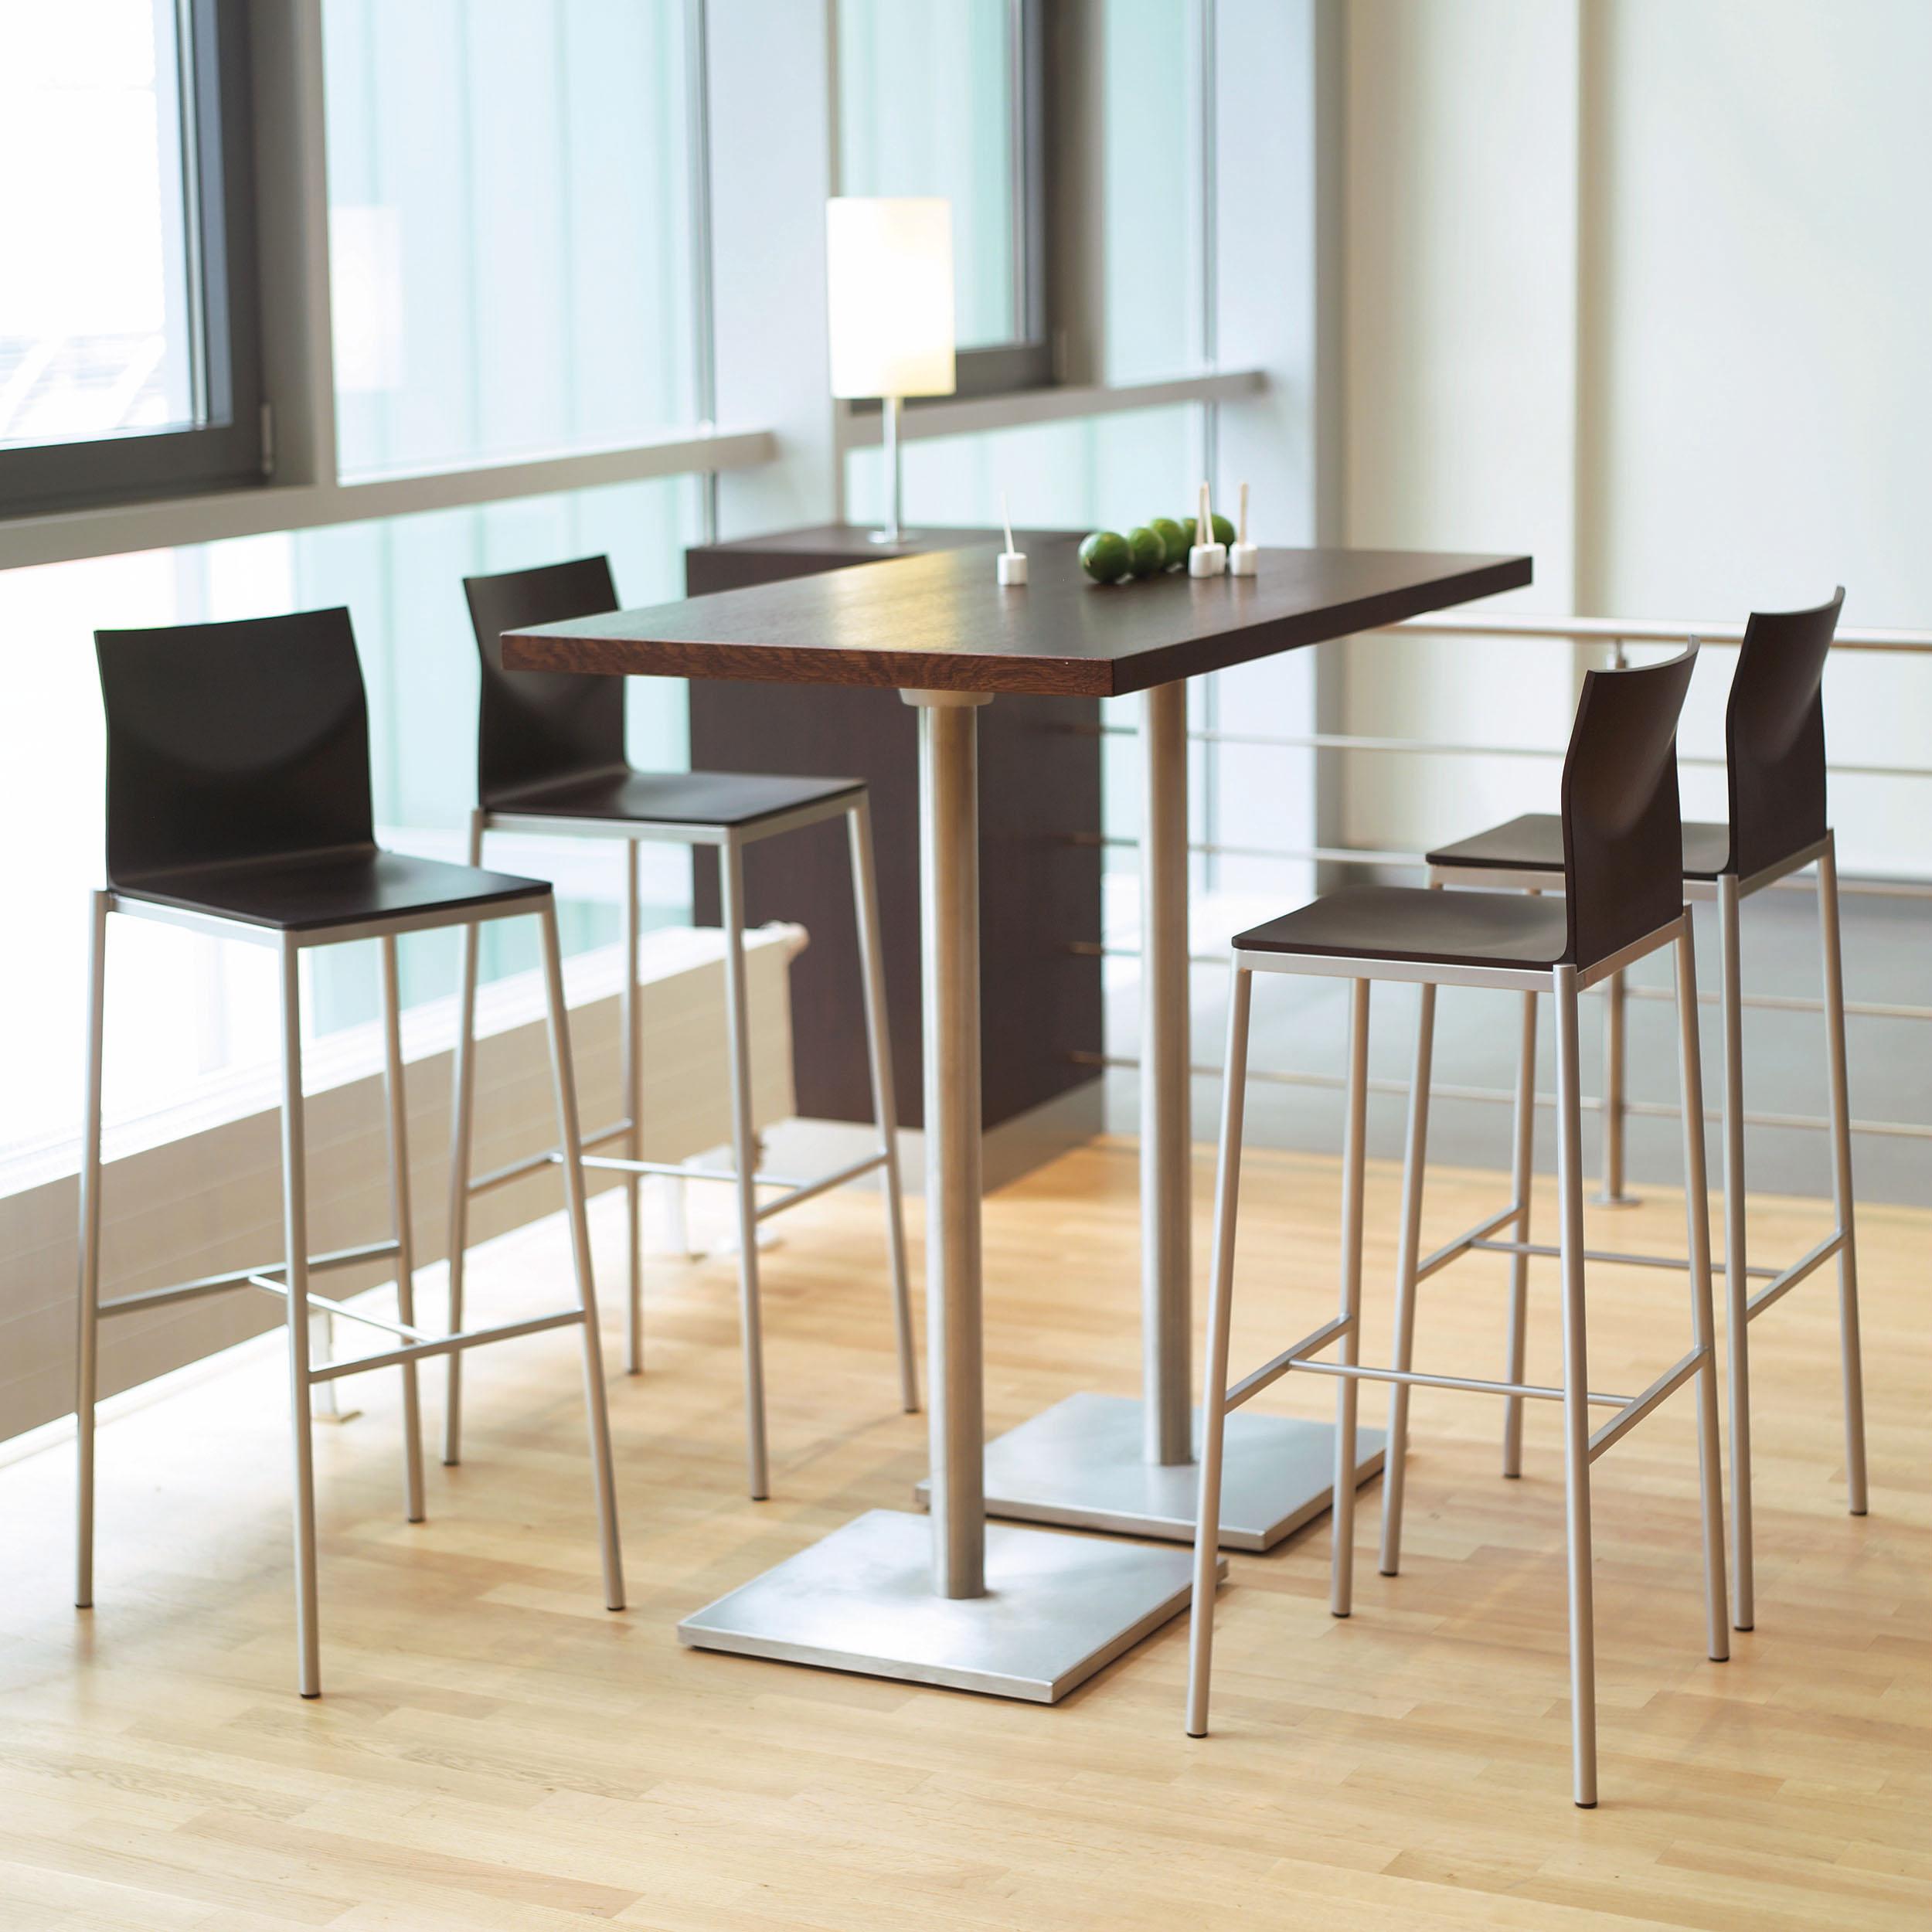 Un concept de design - de nombreux prototypes : qu'il s'agisse de chaises conventionnelles, de catilevers ou de tabourets de bar, y compris ceux à ressort pneumatique, GLOOH, outre sa gamme étendue et le confort qu'il offre, dégage un design unique.